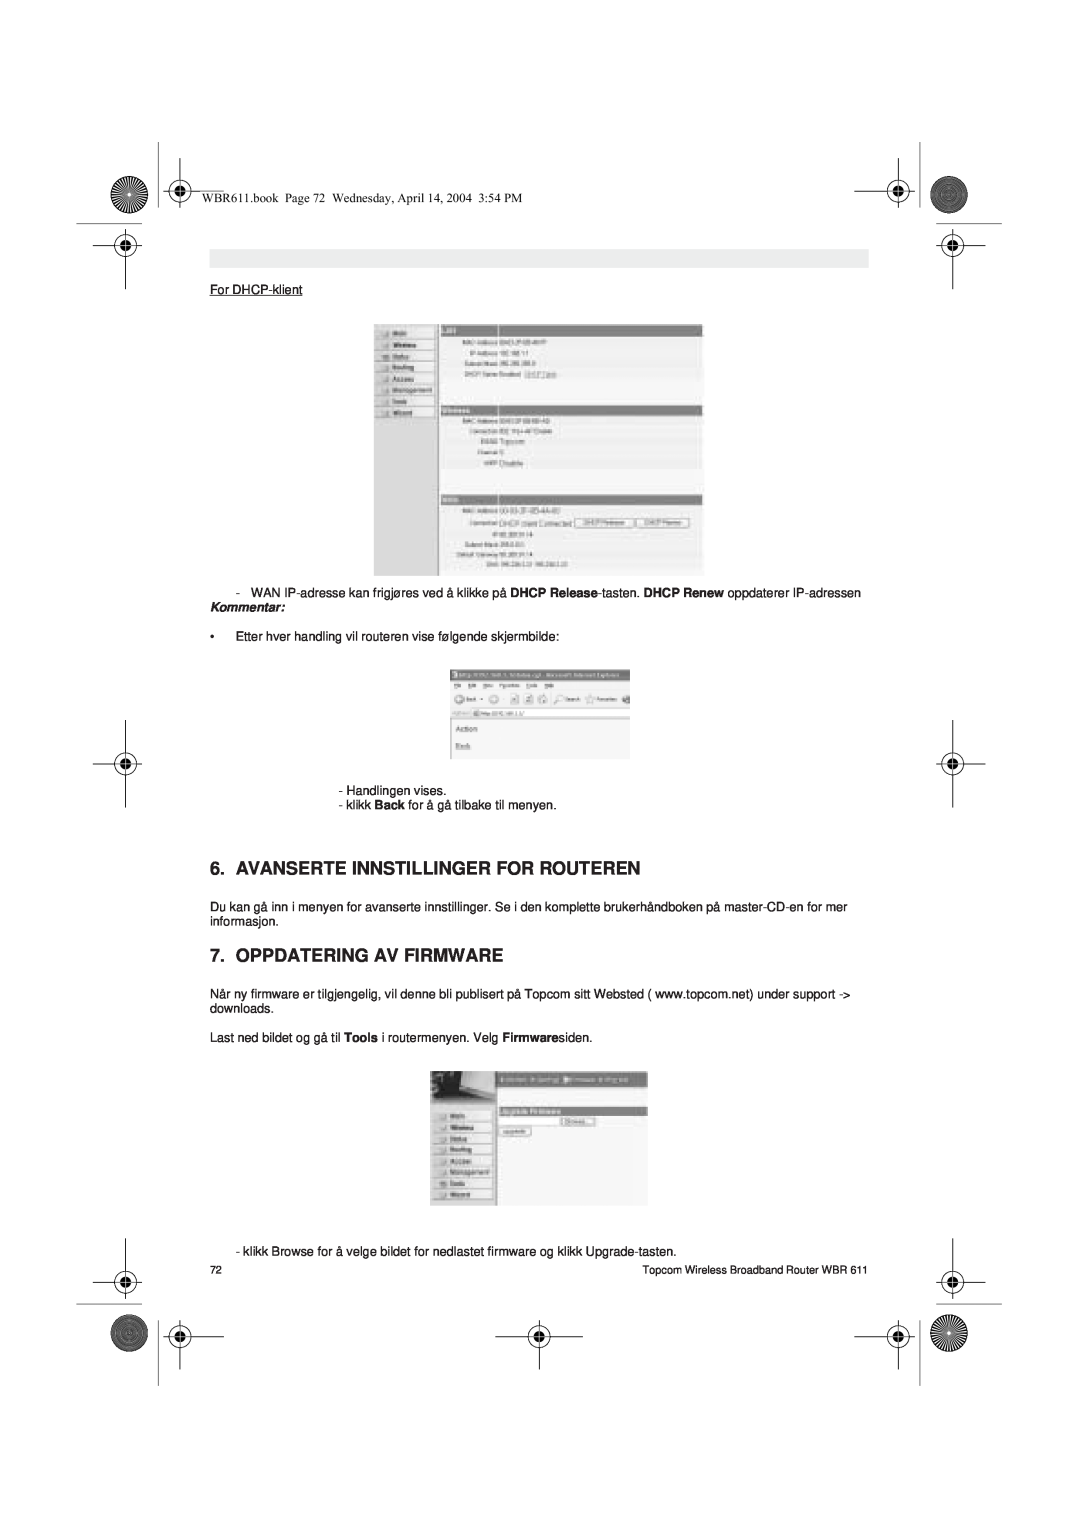 Topcom WBR 611 manual do utilizador Avanserte Innstillinger For Routeren, Oppdatering Av Firmware, Kommentar 